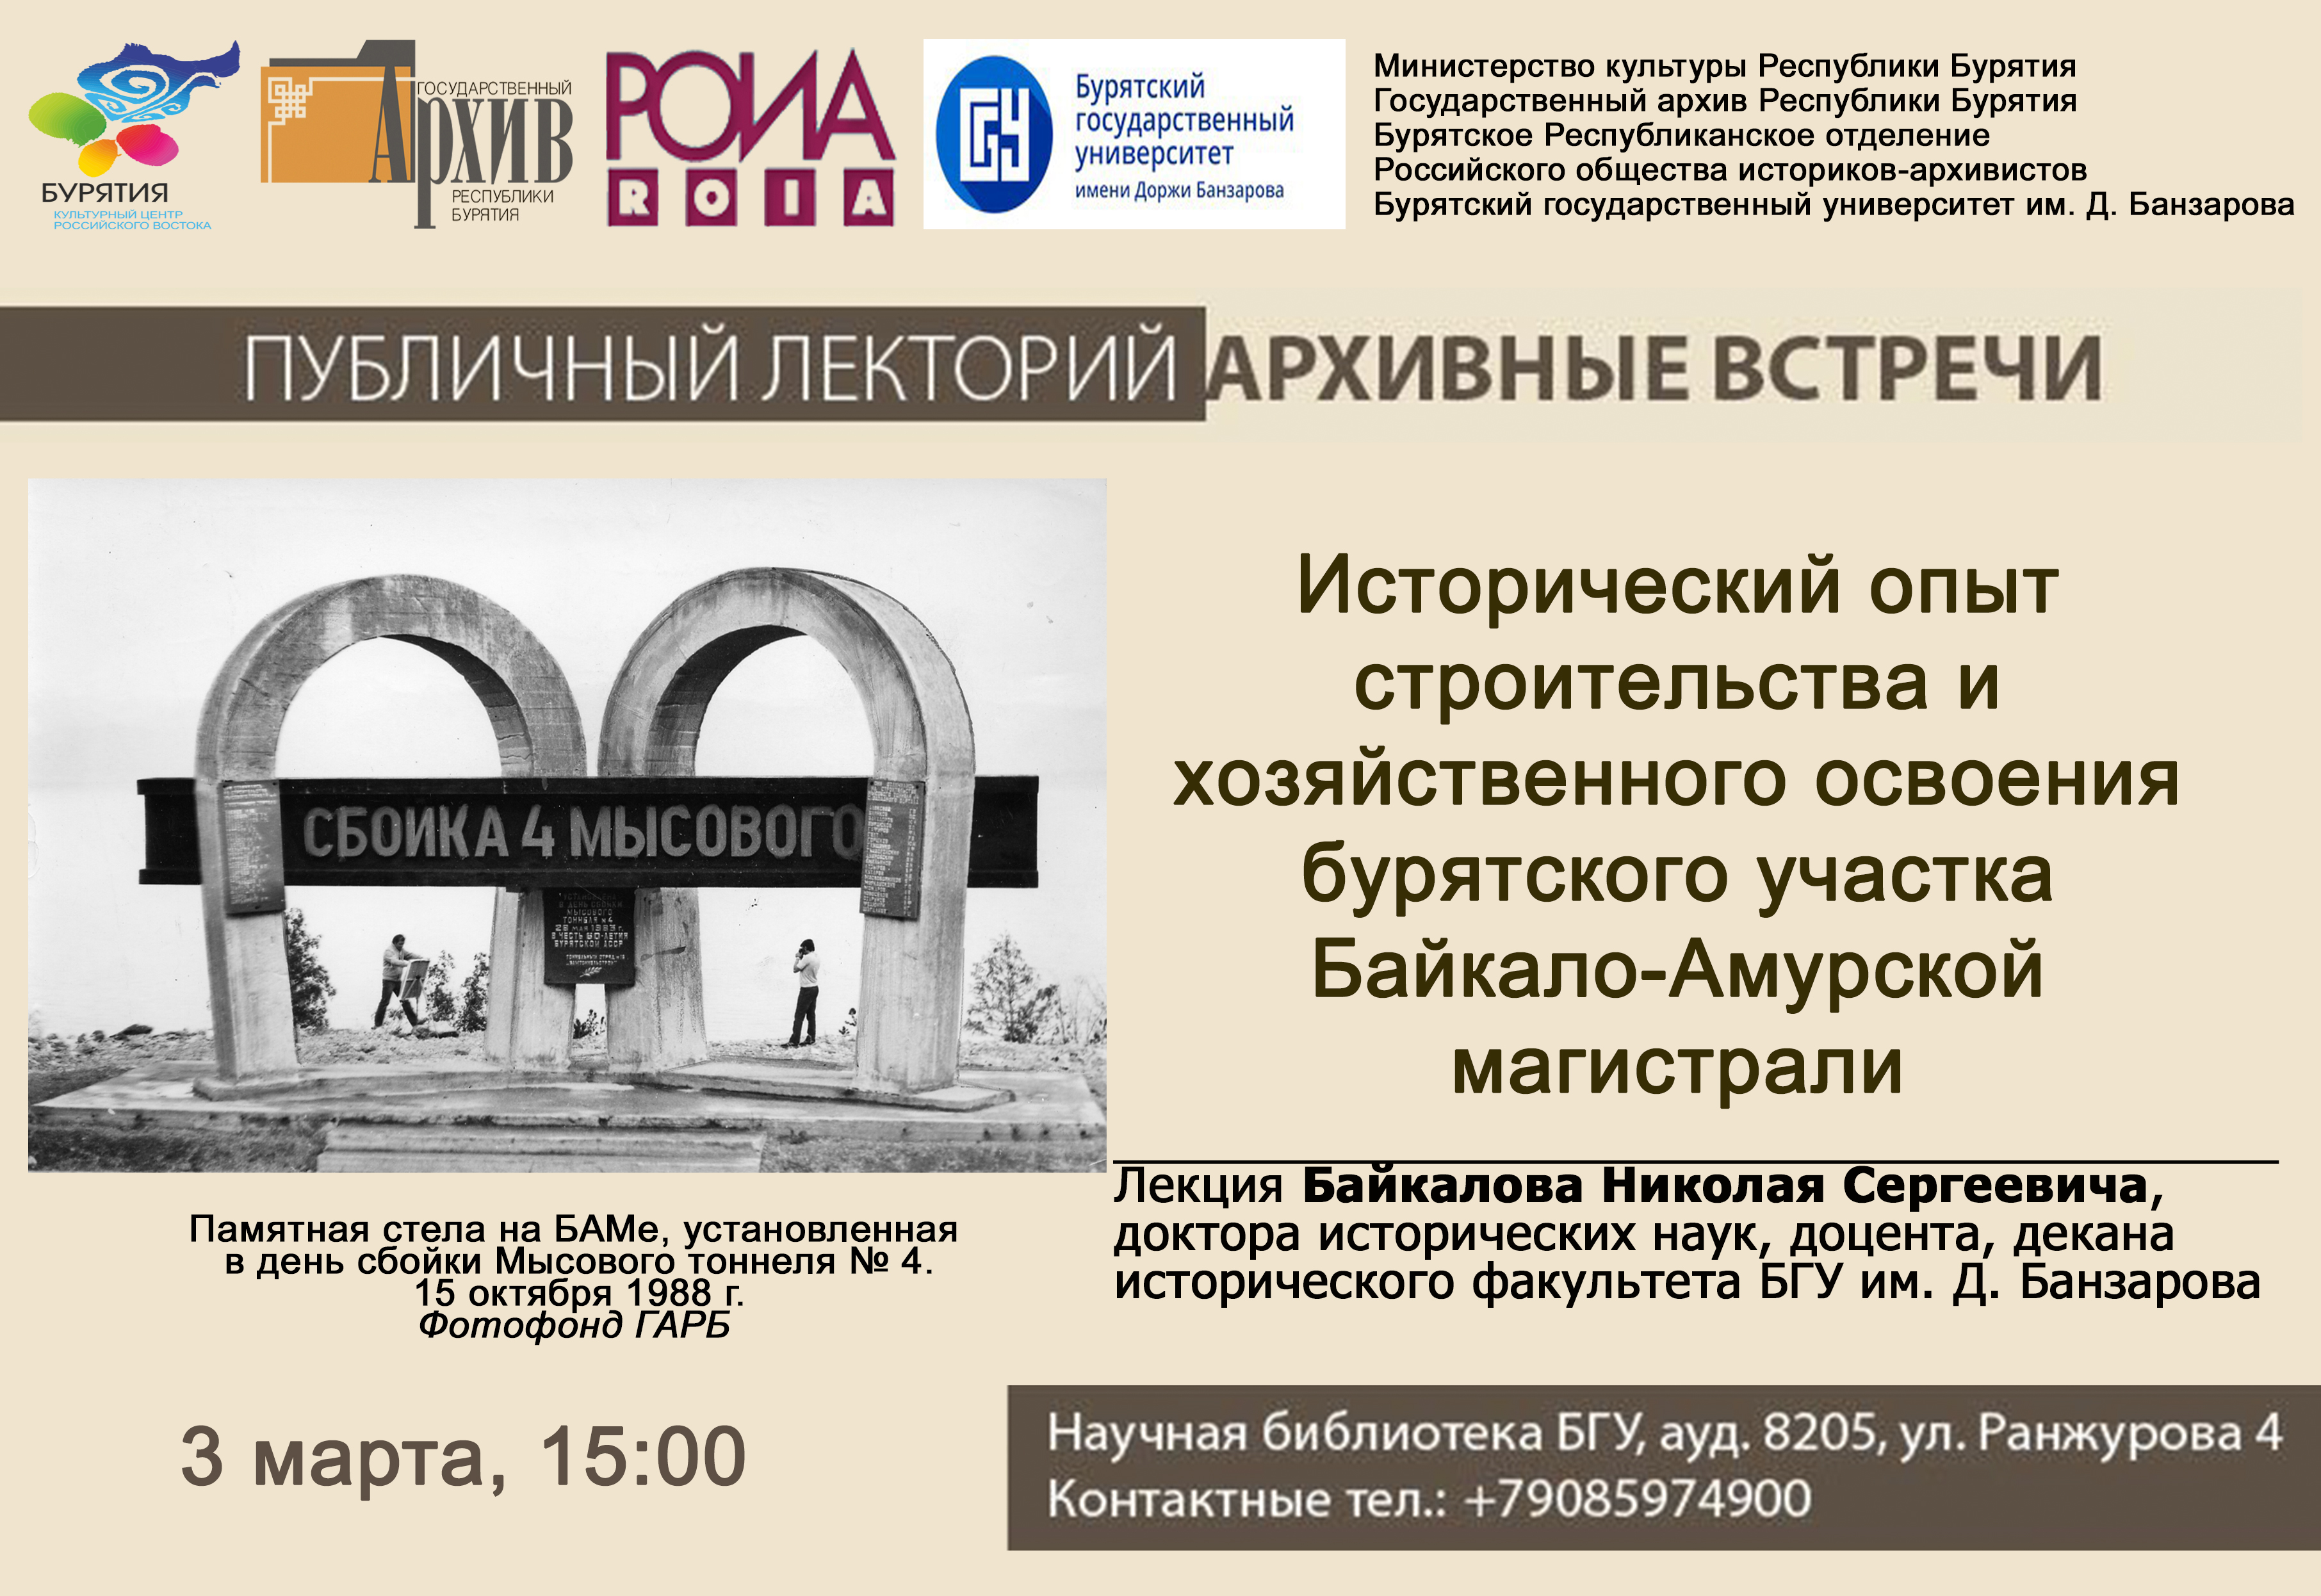 Государственный архив Республики Бурятия приглашает на публичный лекторий «Архивные встречи»